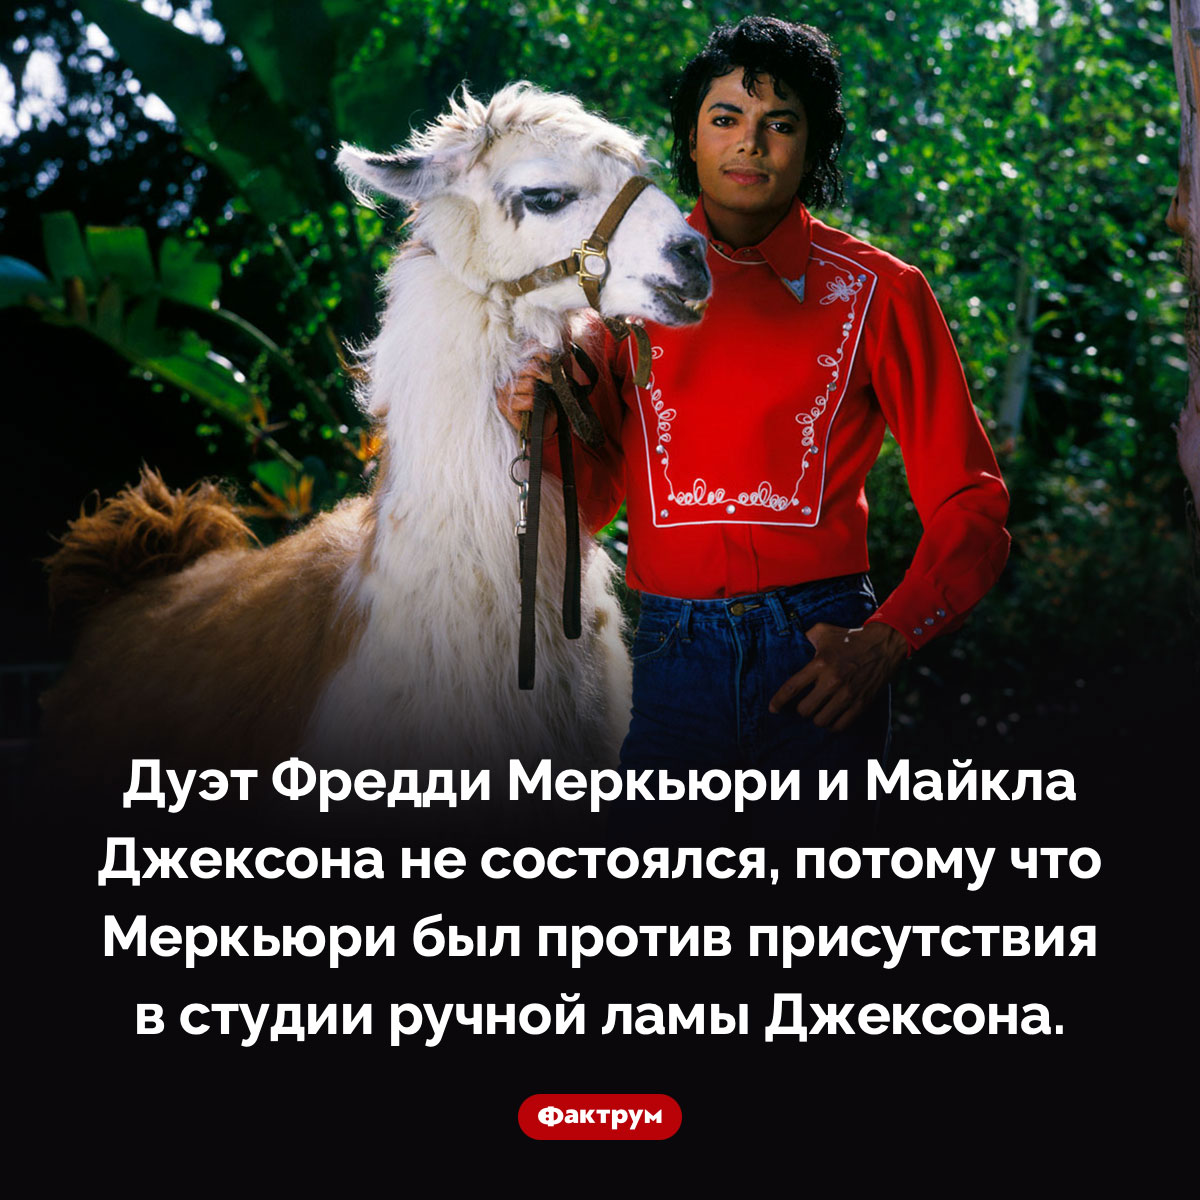 Меркьюри запретил Джексону привести в студию ламу. Дуэт Фредди Меркьюри и Майкла Джексона не состоялся, потому что Меркьюри был против присутствия в студии ручной ламы Джексона.